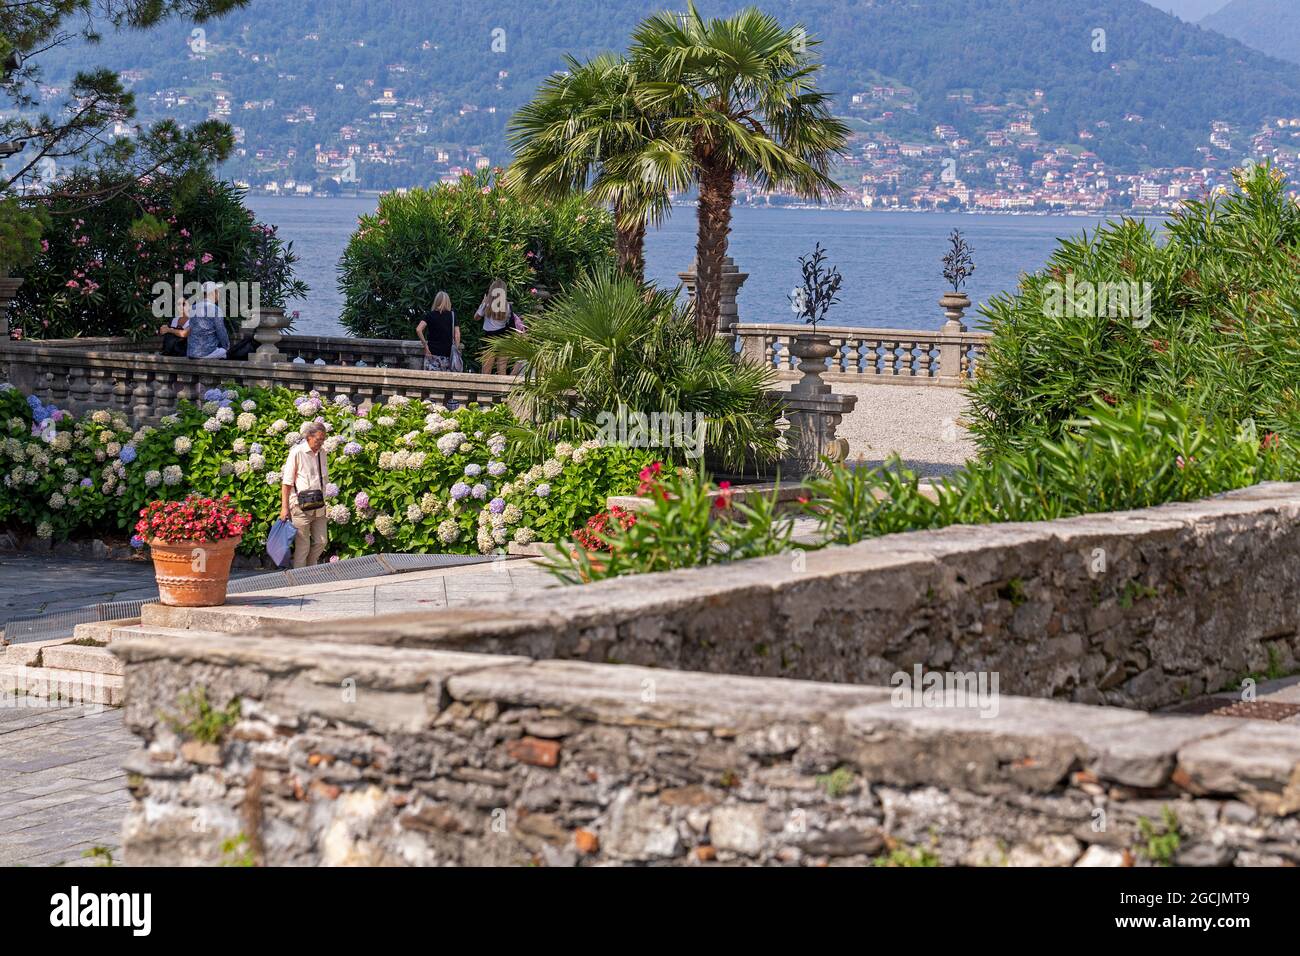 Isola Bella, Stresa, Lago Maggiore, Piemont, Italien Stockfoto